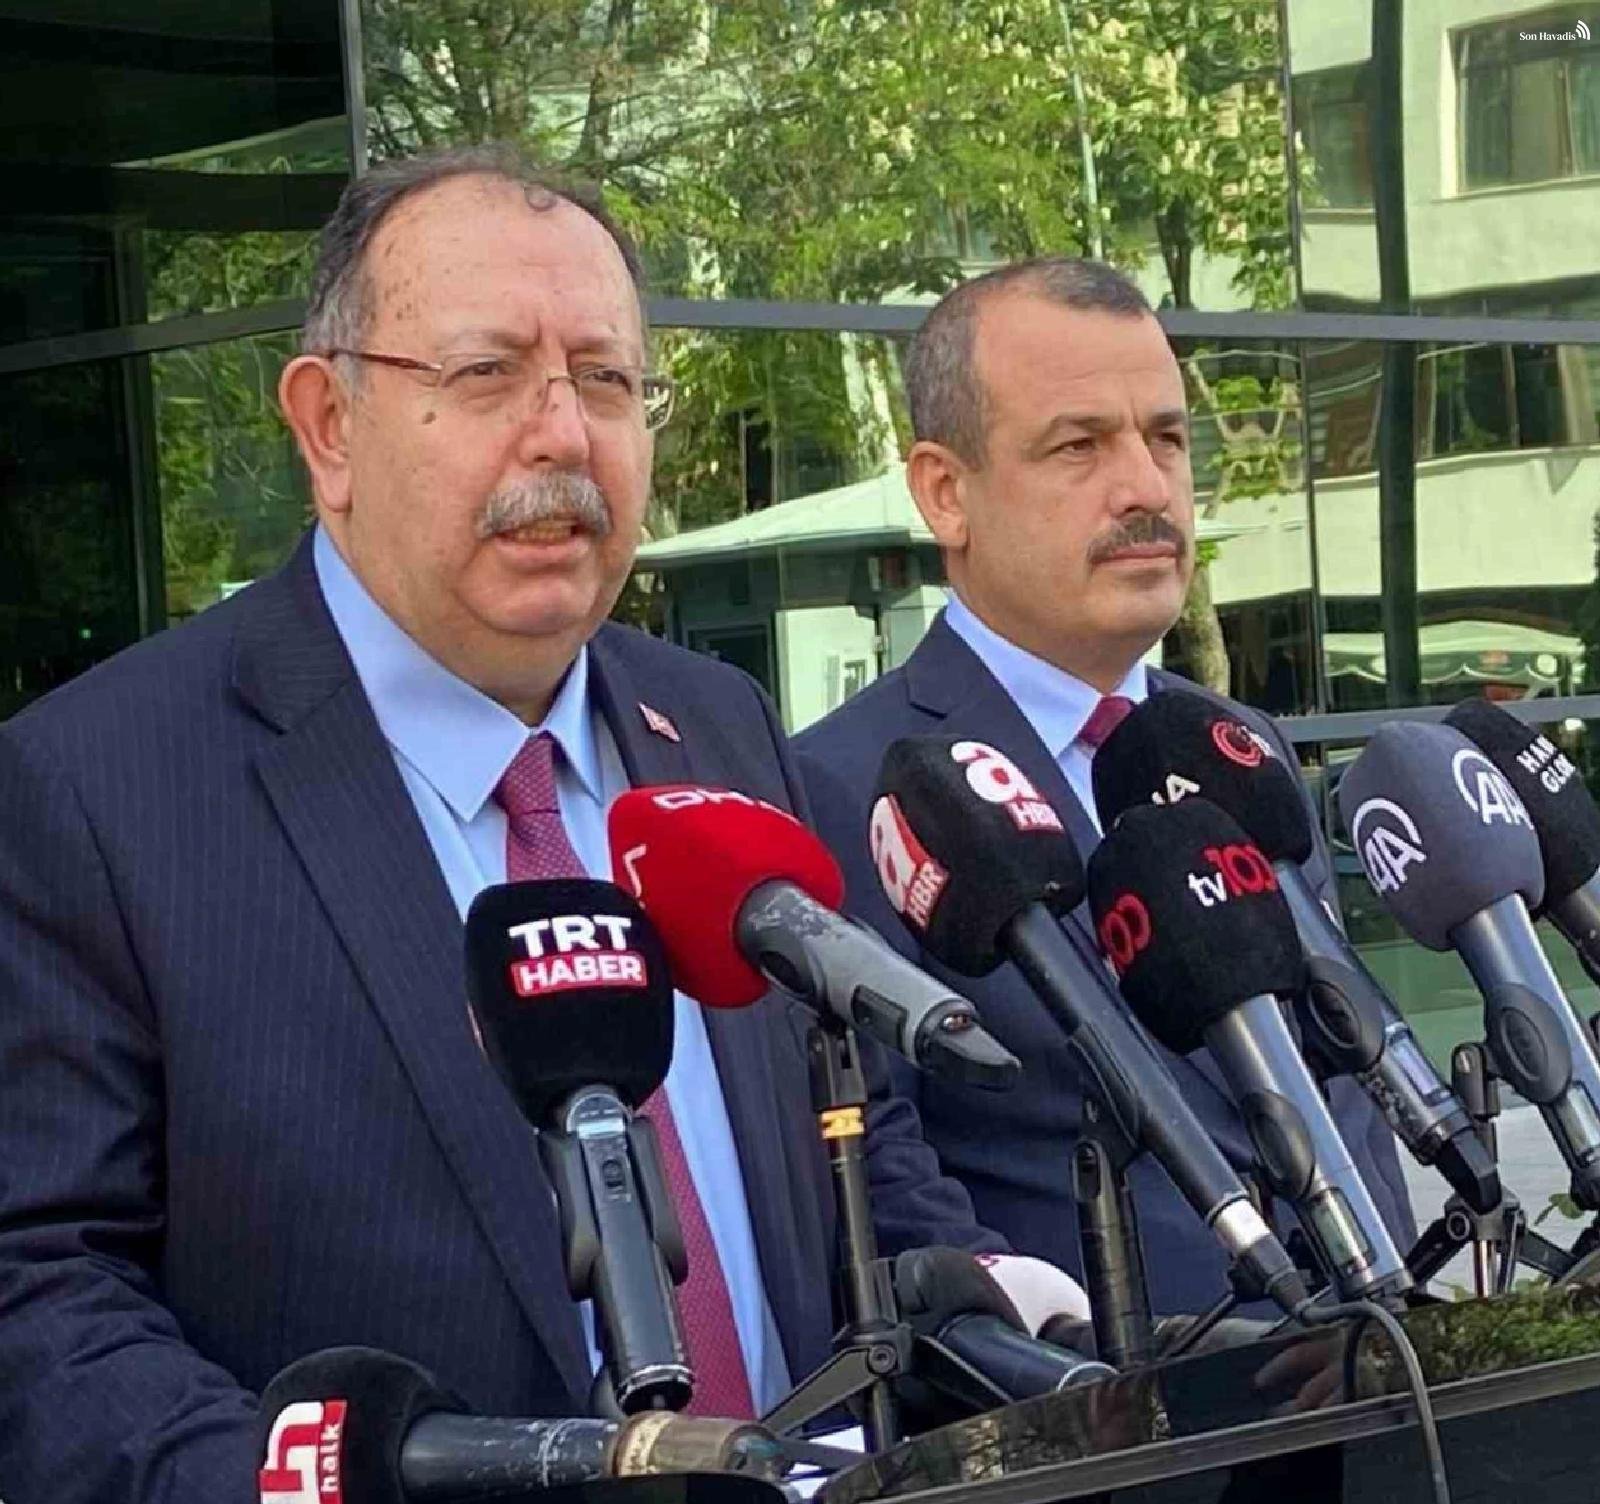 YSK Başkanı Ahmet Yener, ABD, Kanada, İngiltere, Avustralya ve İrlanda'da 20-24 Mayıs oy verme günlerinin belirlendiğini duyurdu